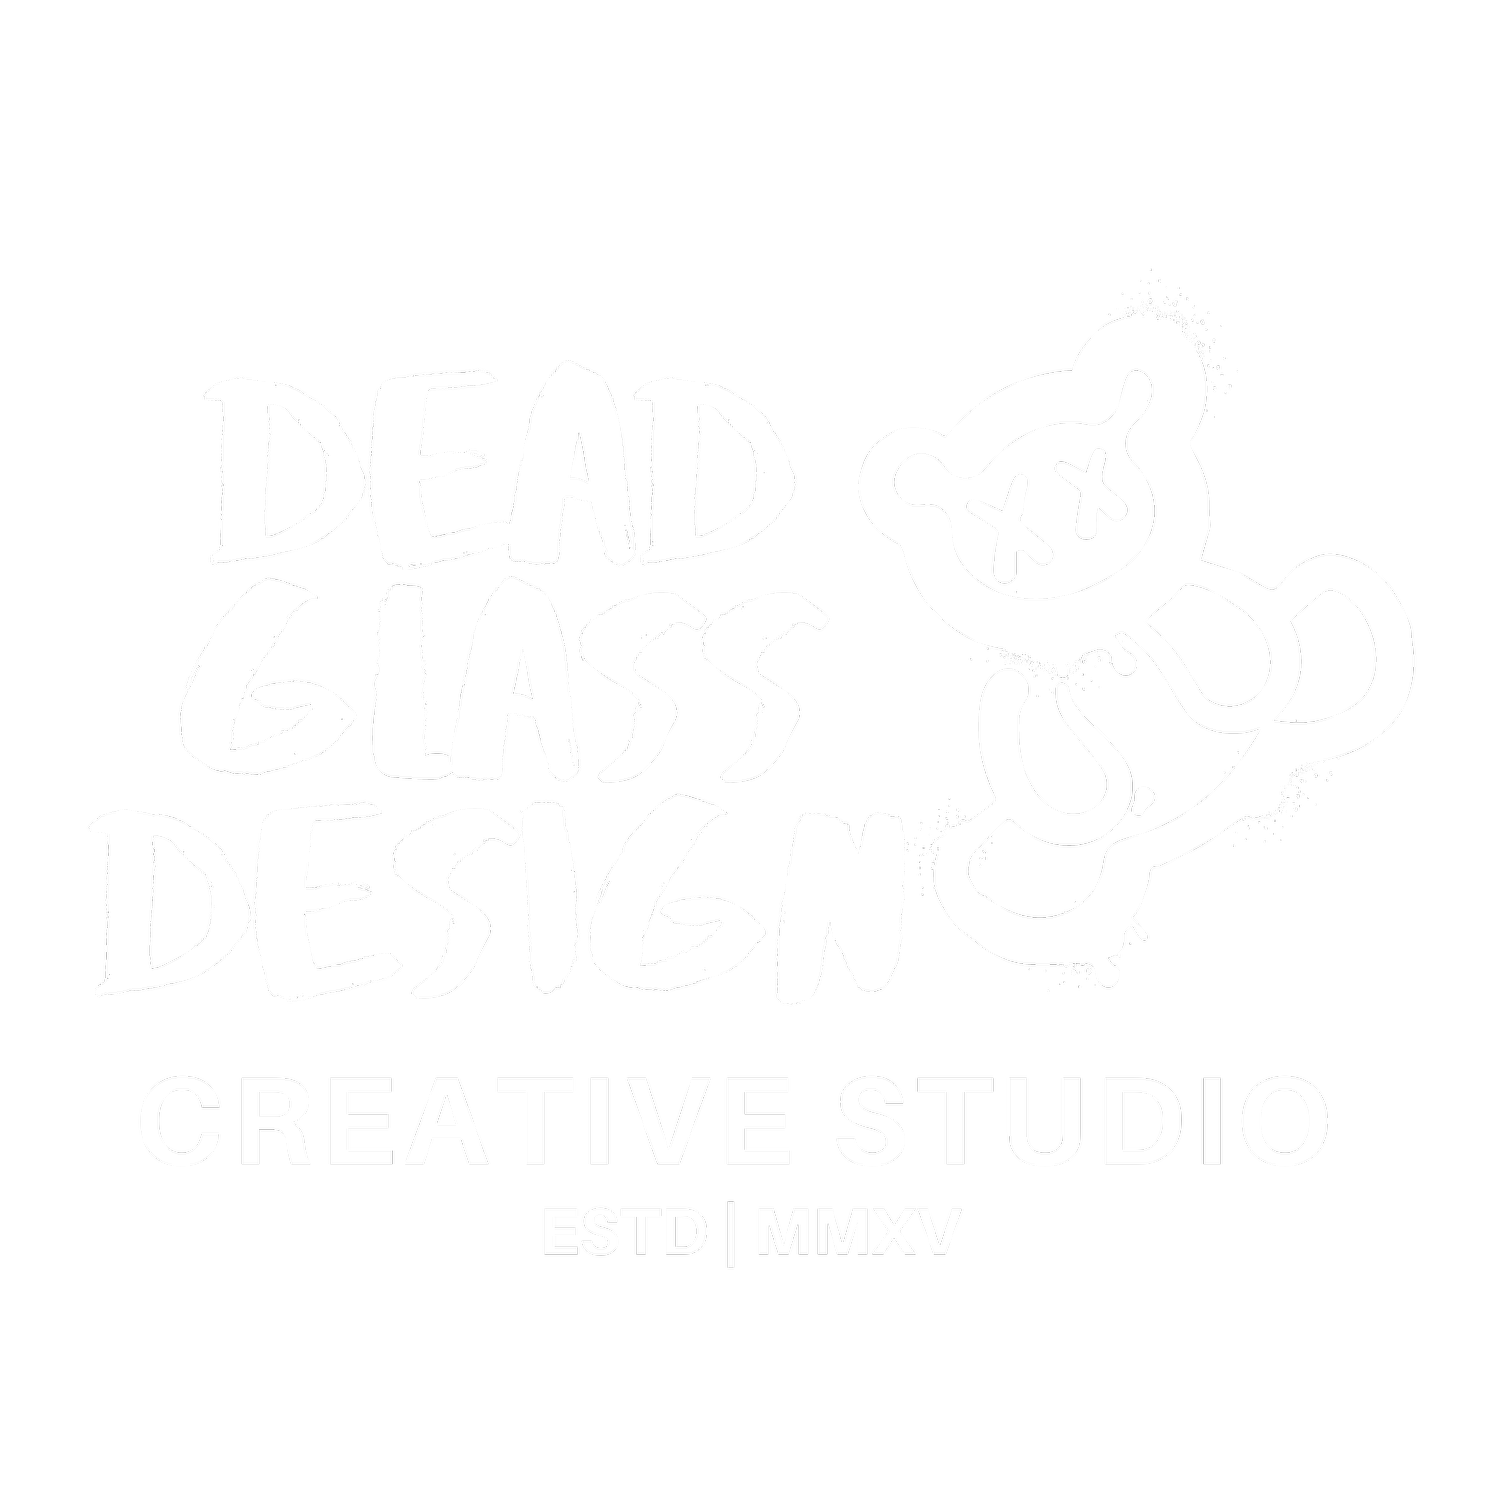 Dead Glass Design